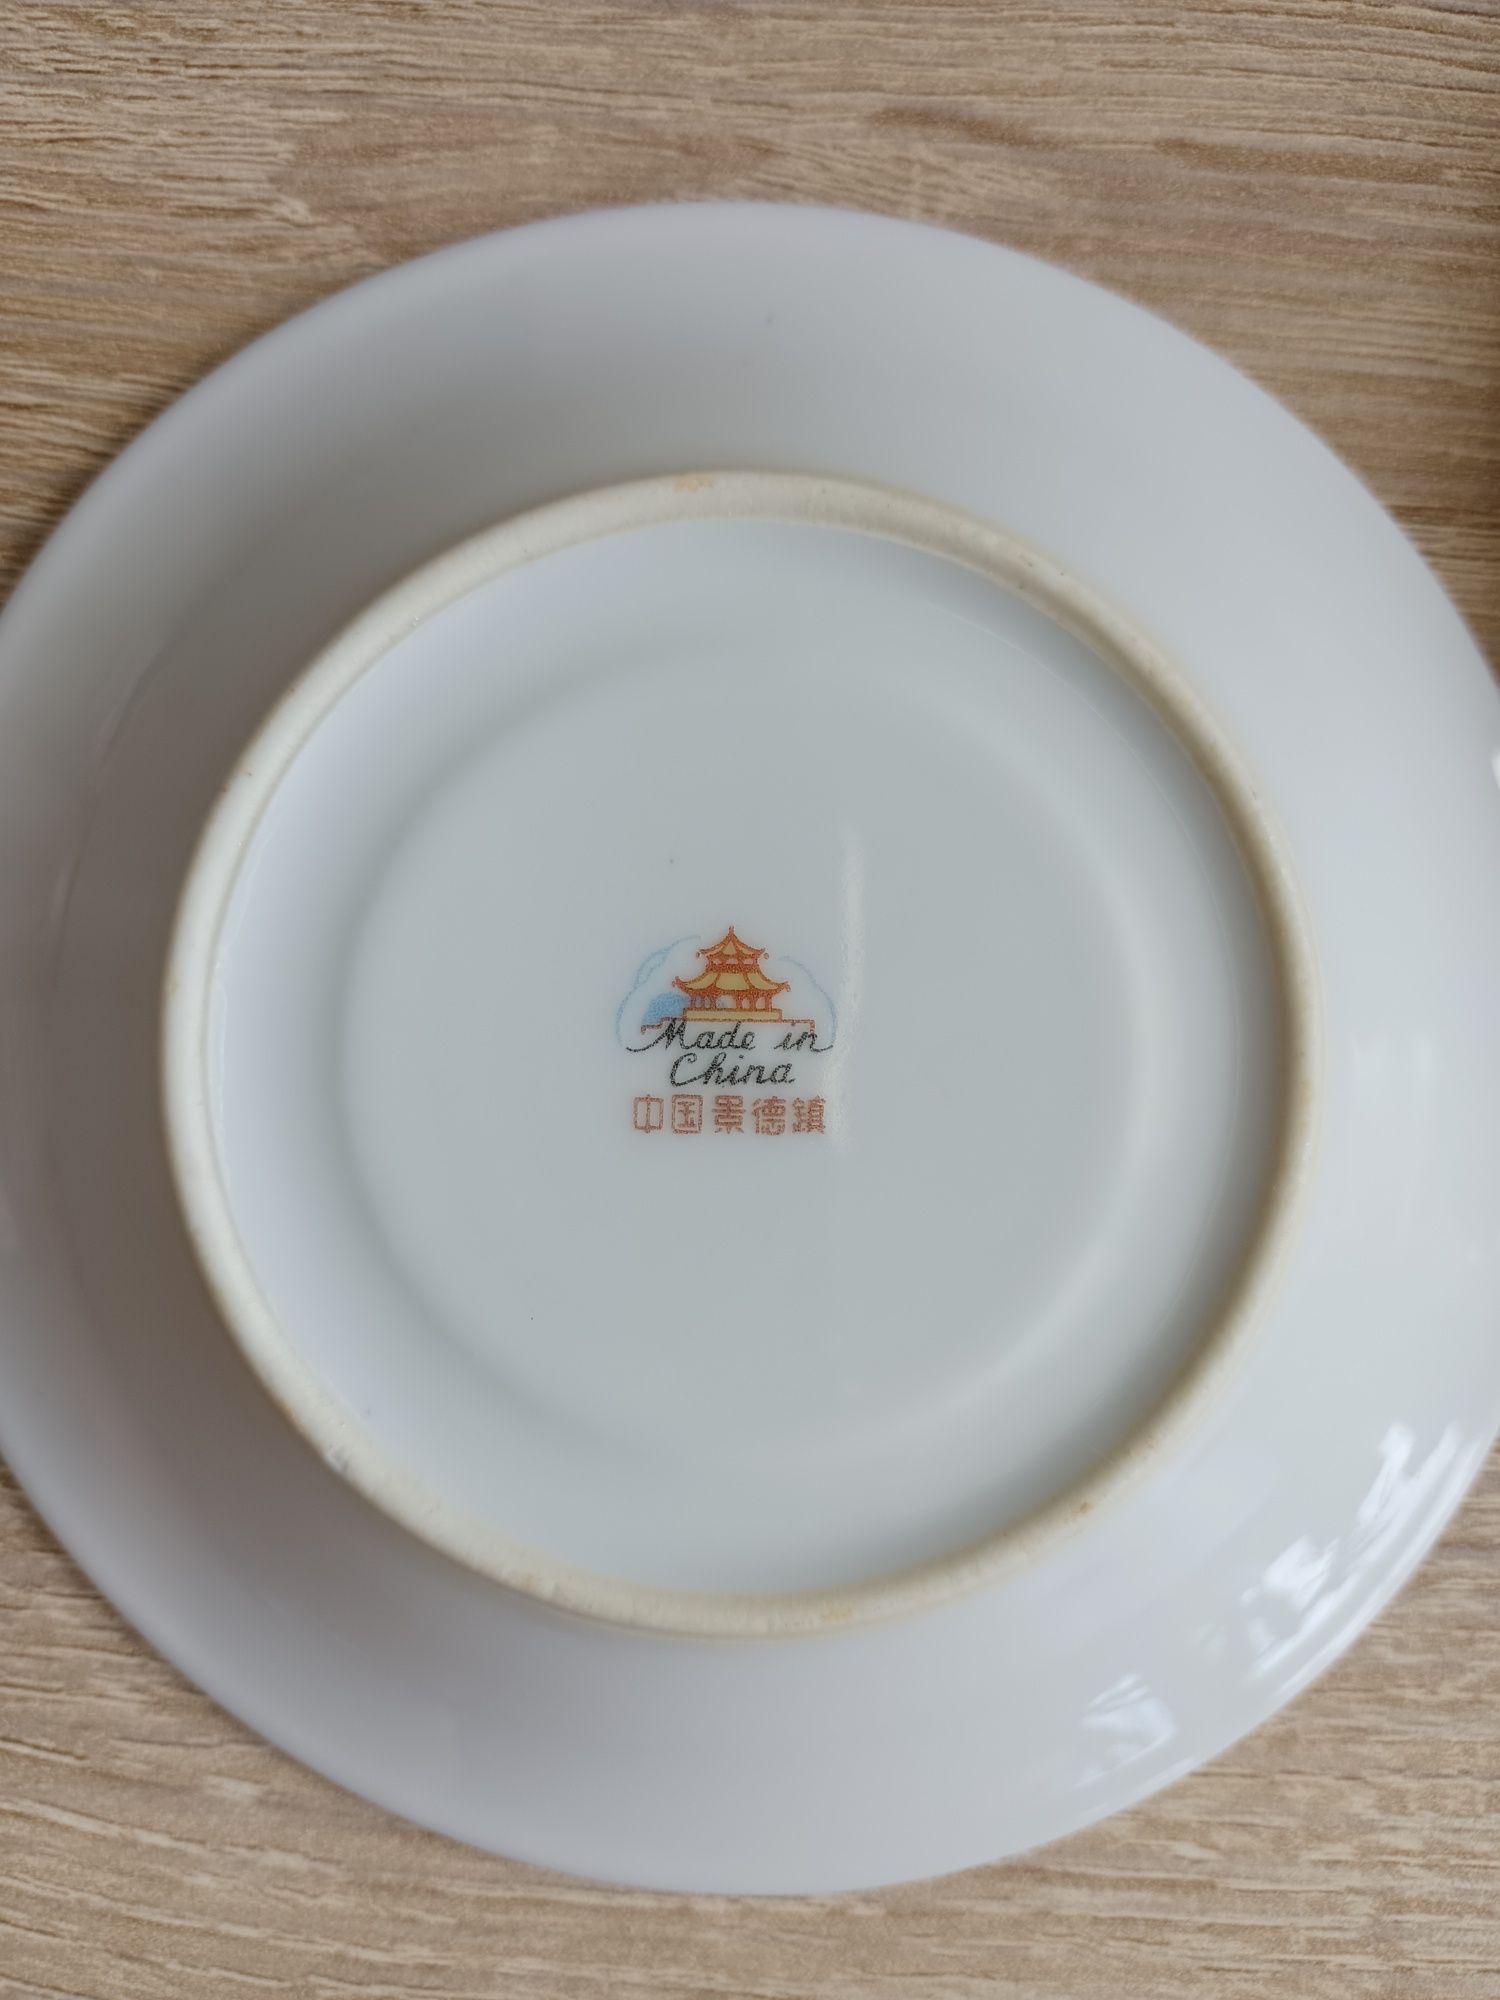 Spodki talerzyki porcelana chińska